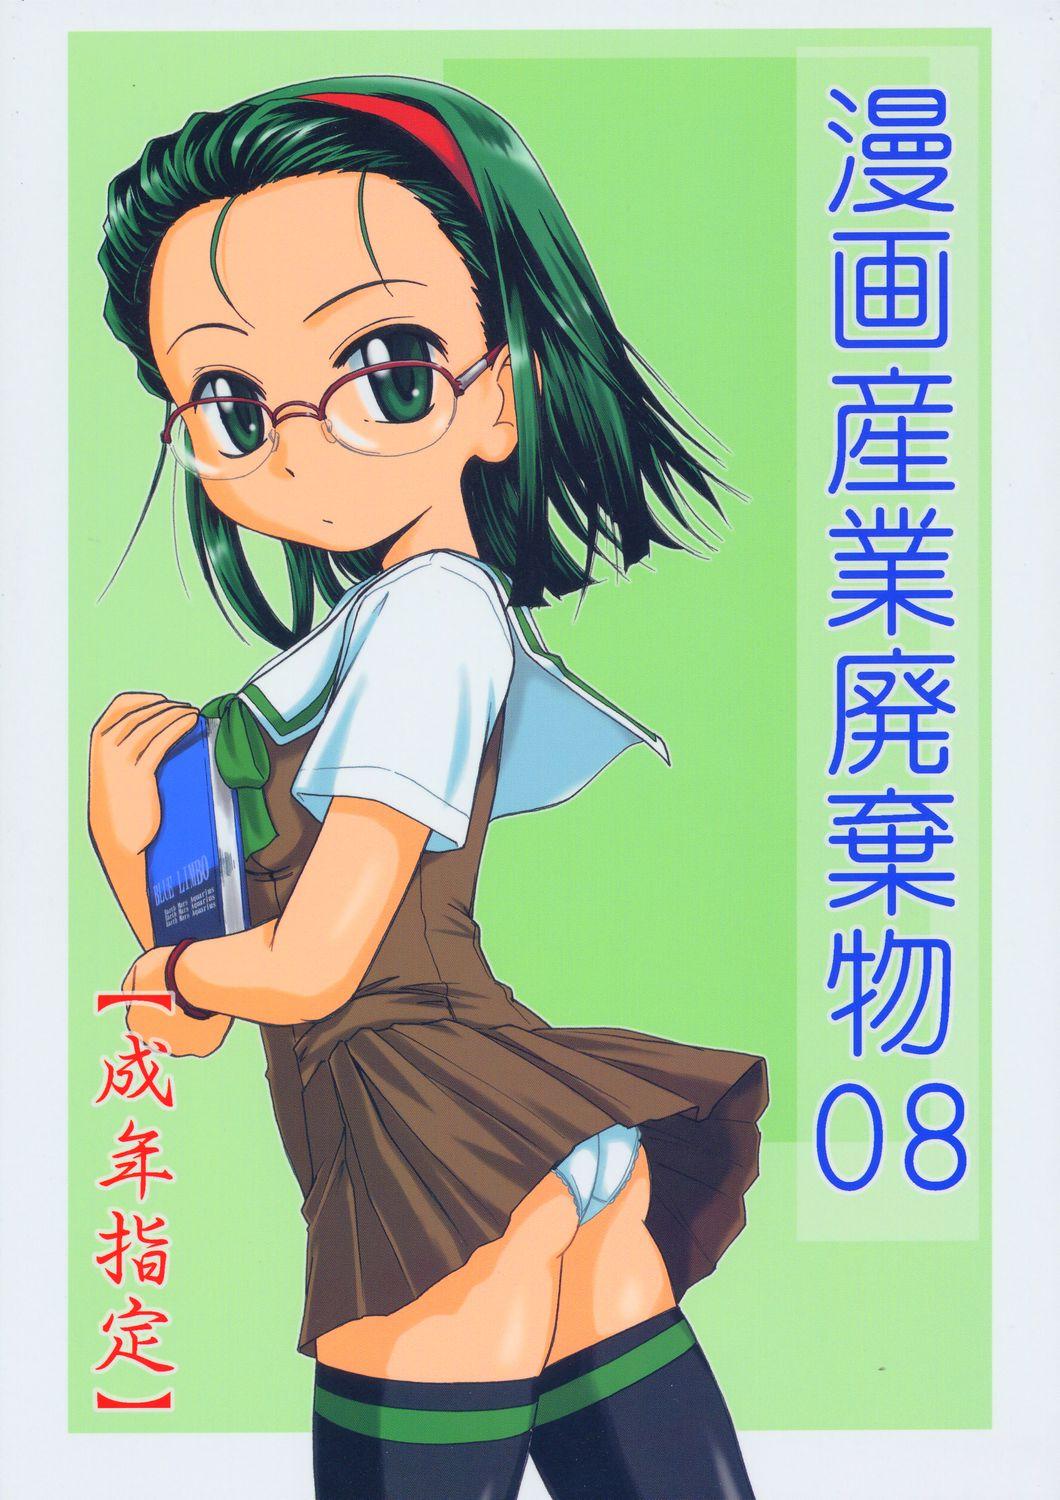 Escort Manga Sangyou Haikibutsu 08 - Gau gau wata Indonesian - Page 1